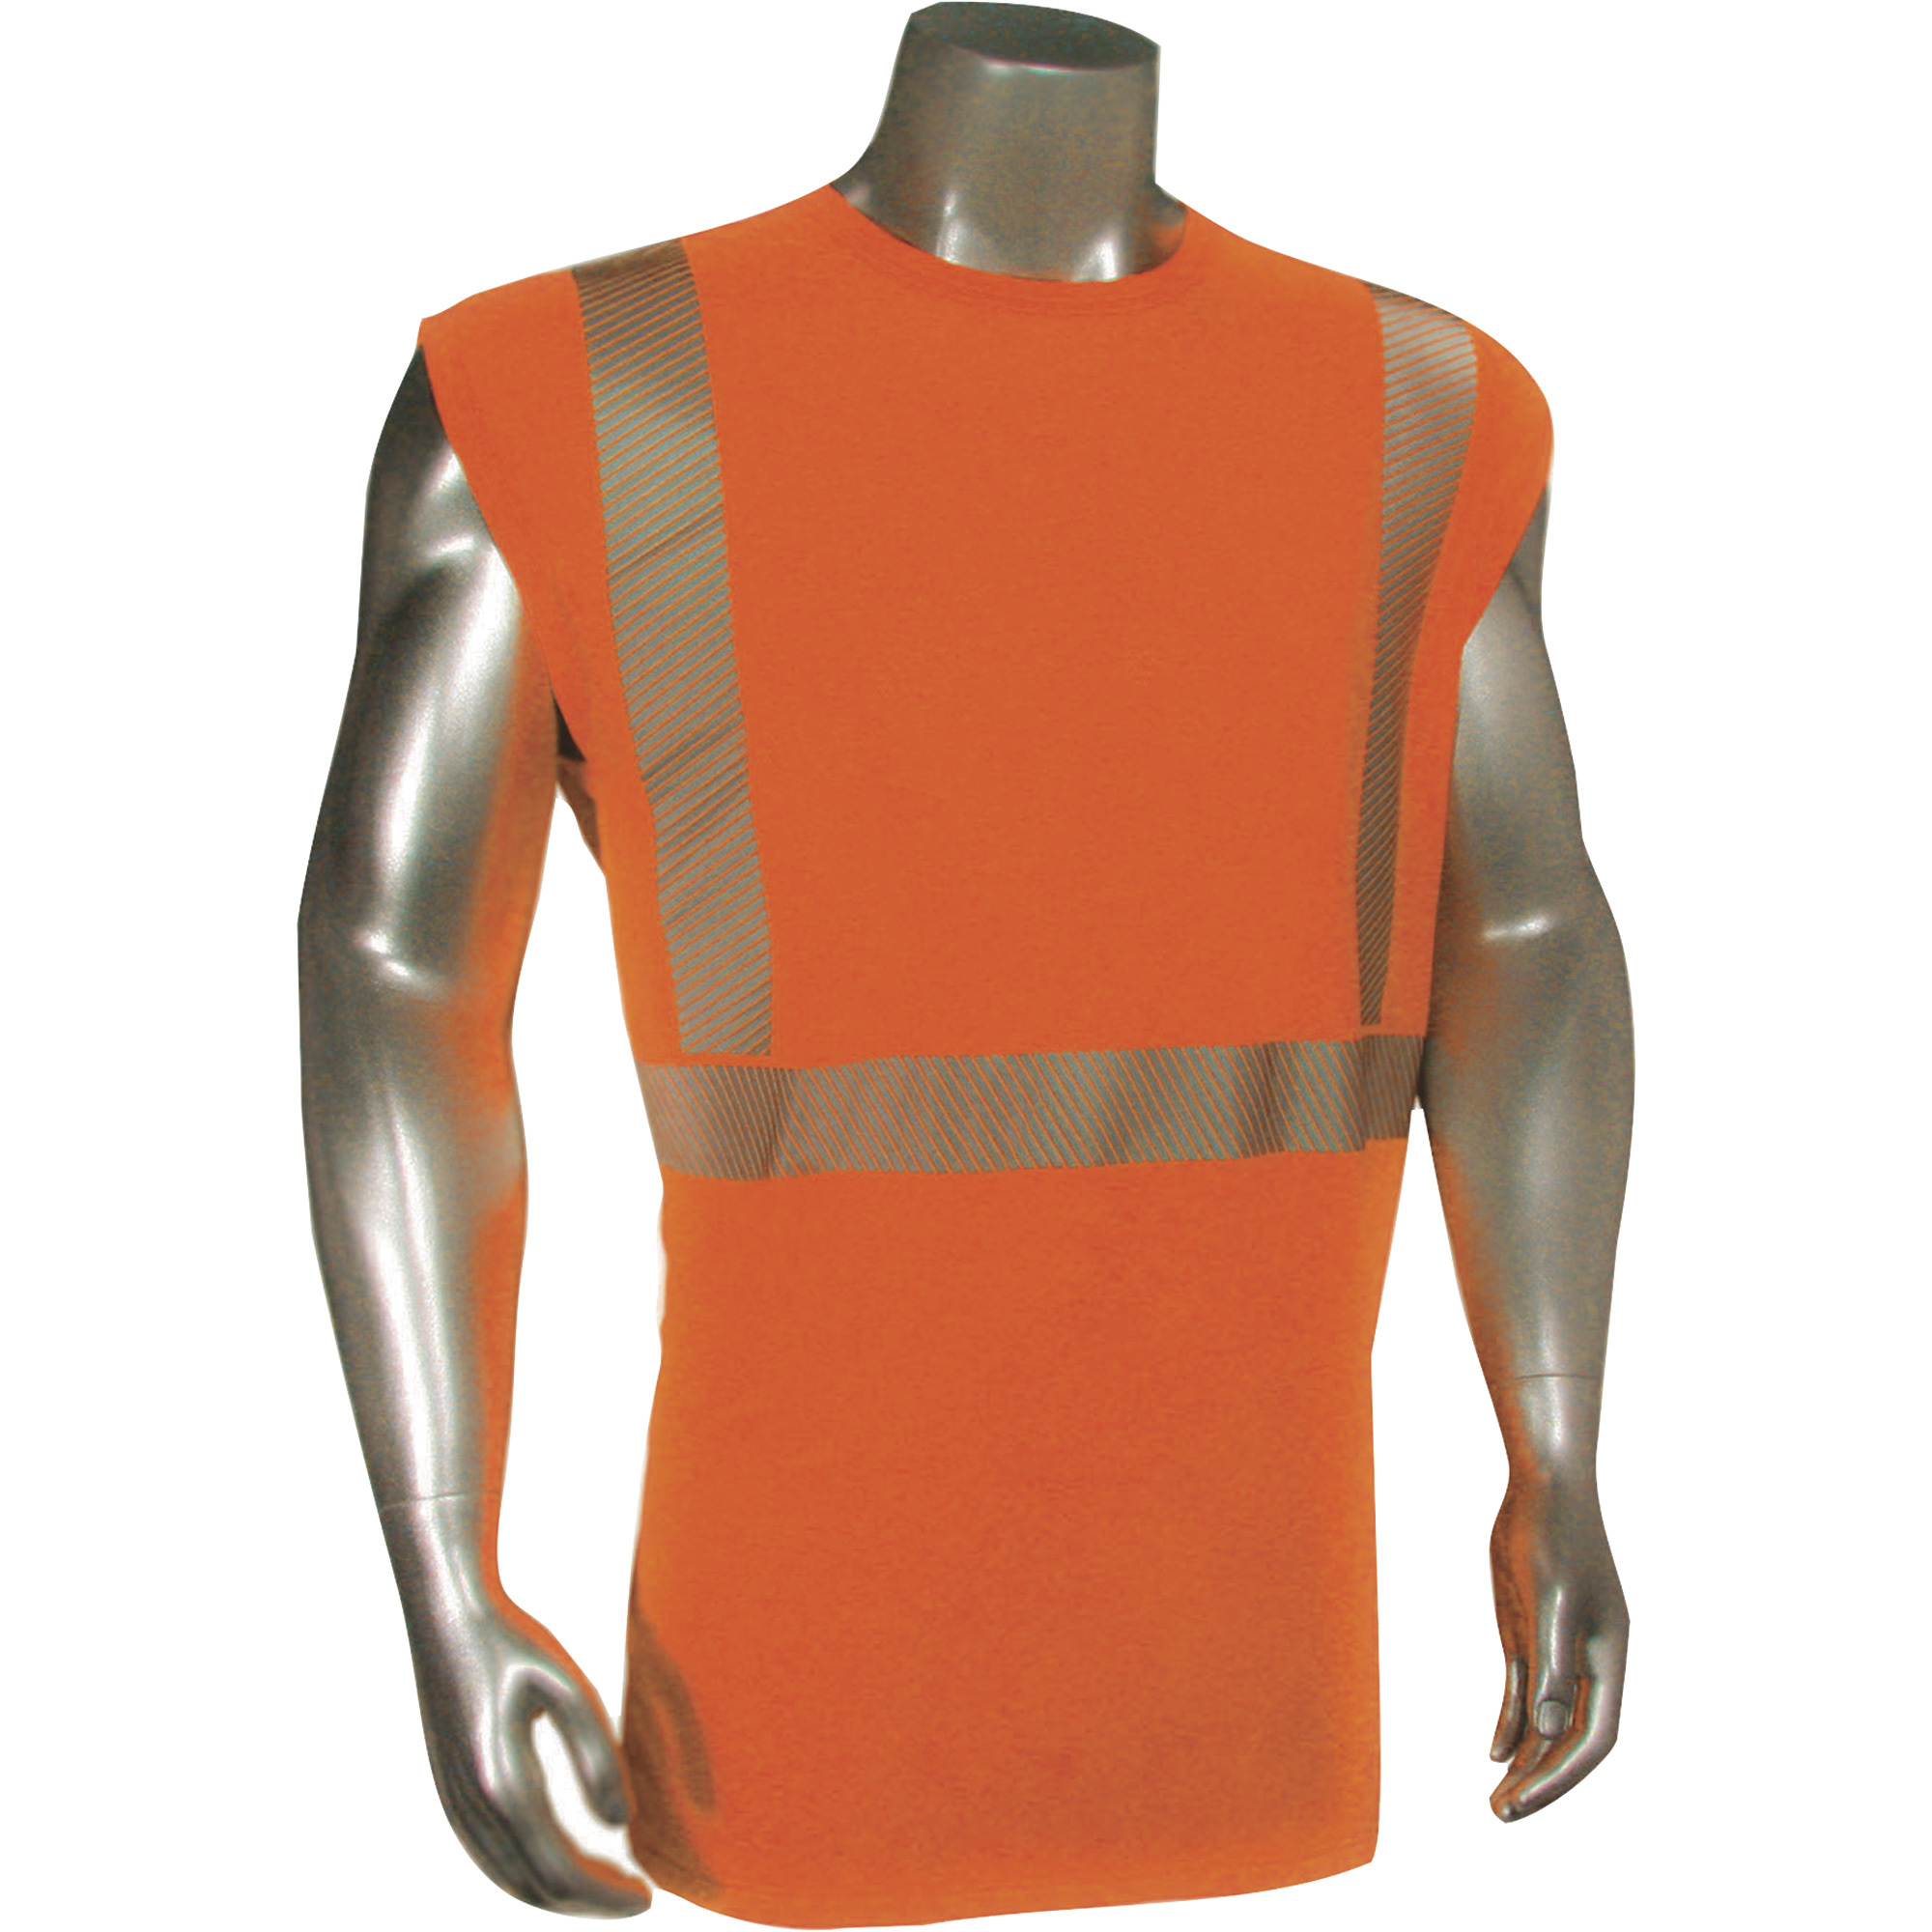 Radians RadWear USA Men's Class 2 High Visibility Breezelight Mesh Sleeveless Safety T-Shirt â Orange, 2XL, Model HVâXTSARNS